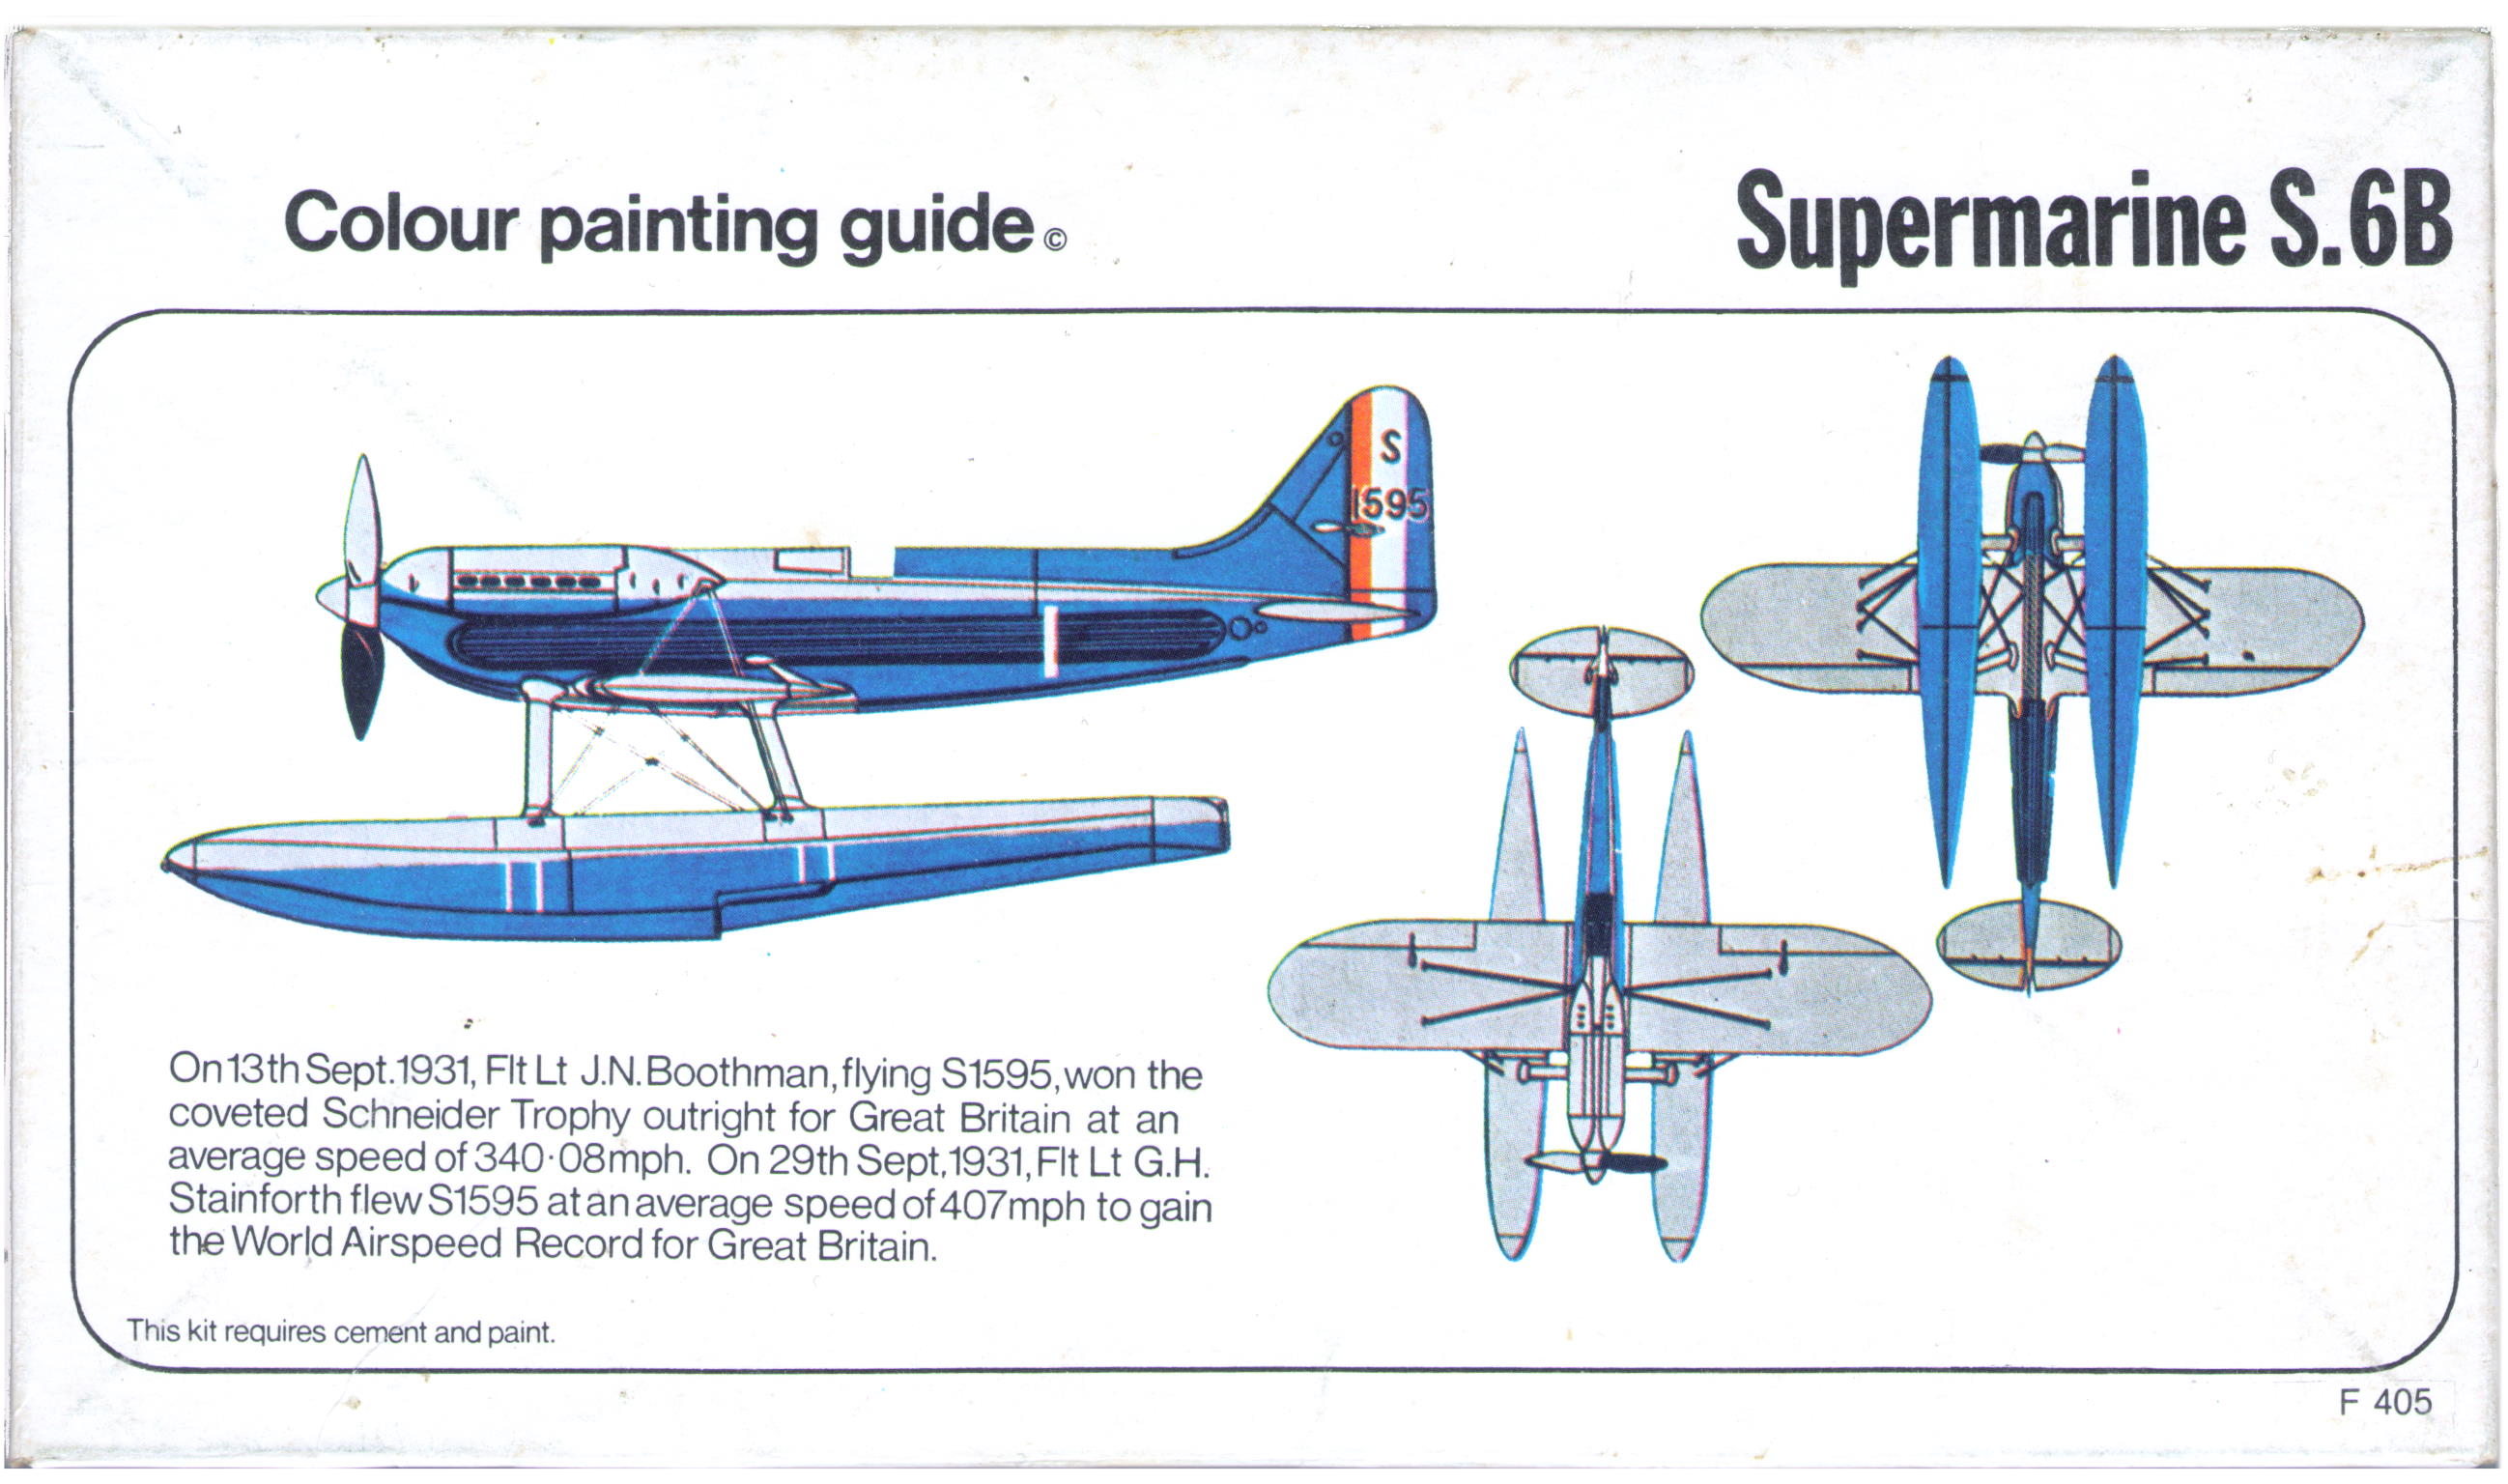  Гид по окраске Supermarine S.6B - Spirit of St. Louis, тестовый вариант коробки Rovex